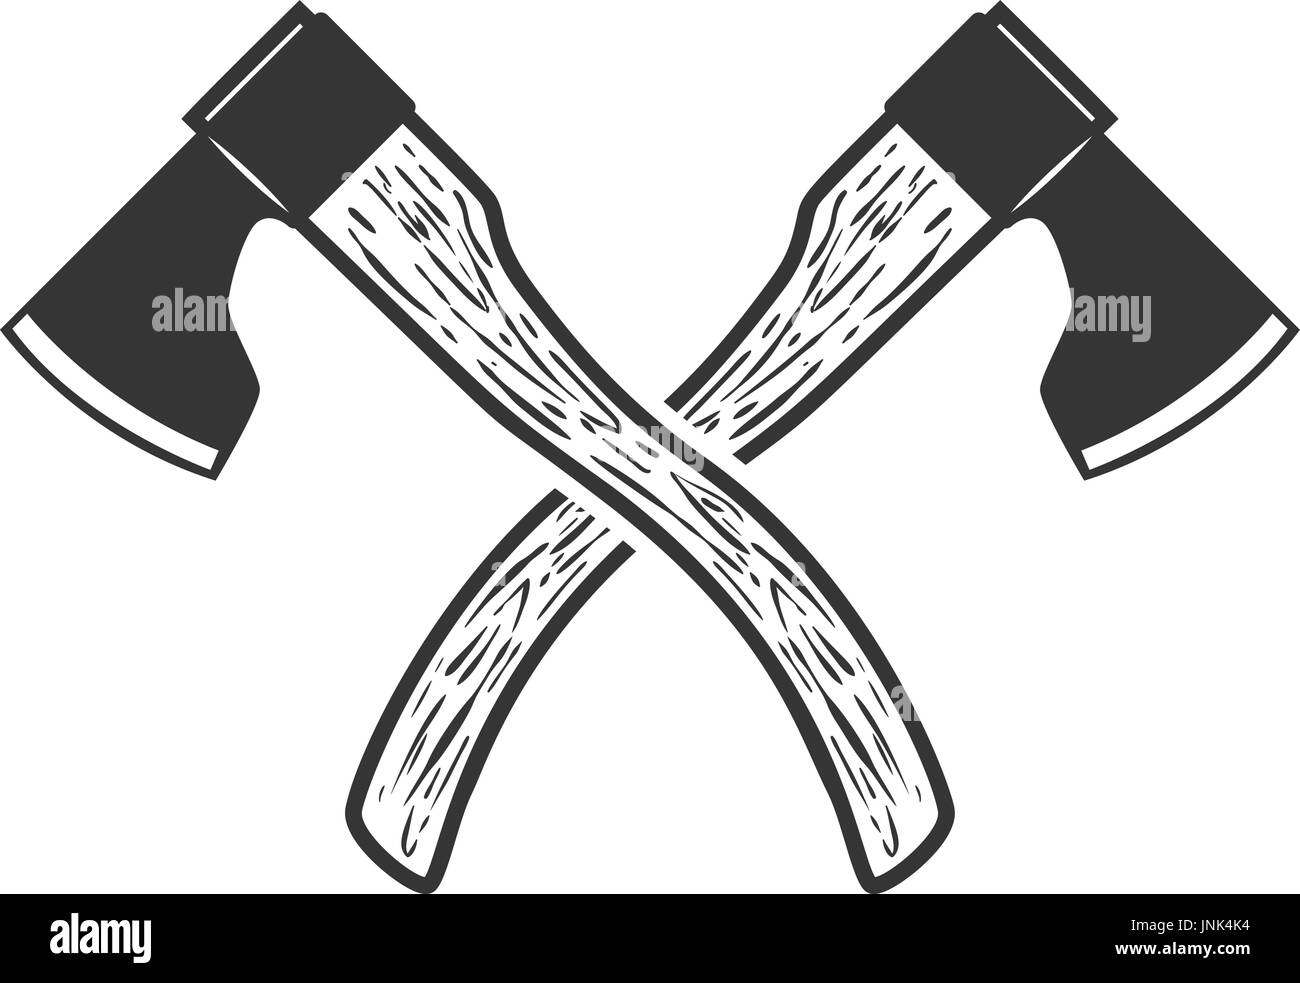 Gekreuzte Axt isoliert auf weißem Hintergrund. Vektor-illustration Stock Vektor